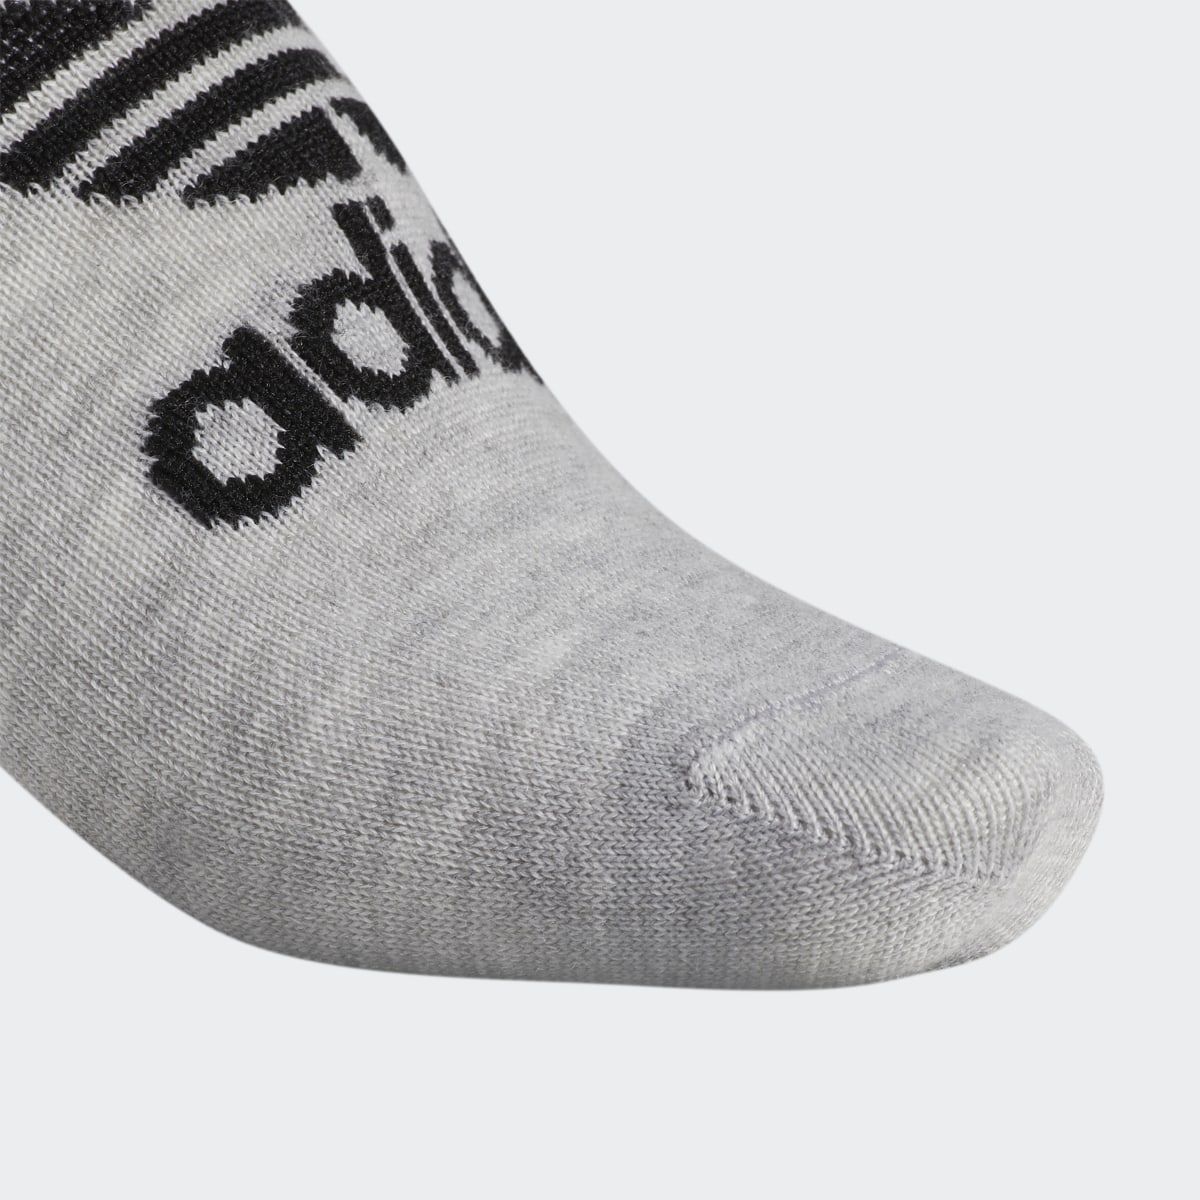 Adidas Classic Superlite Super-No-Show Socks 6 Pairs. 5